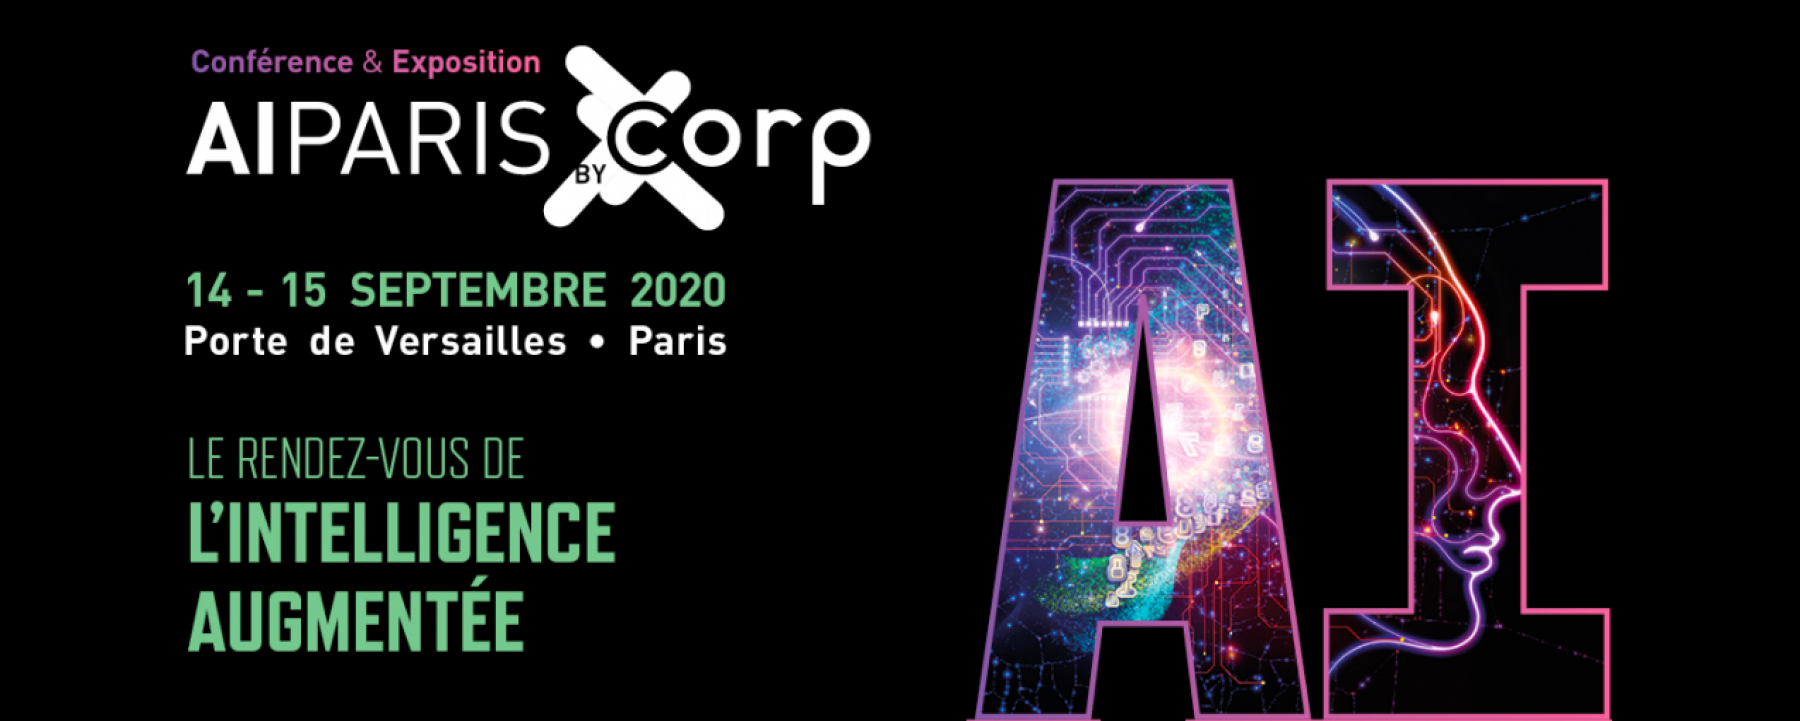 Evenement hybride AI Paris Corp 2020, organisé par Corp Agency, les 14 et 15 septembre 2020